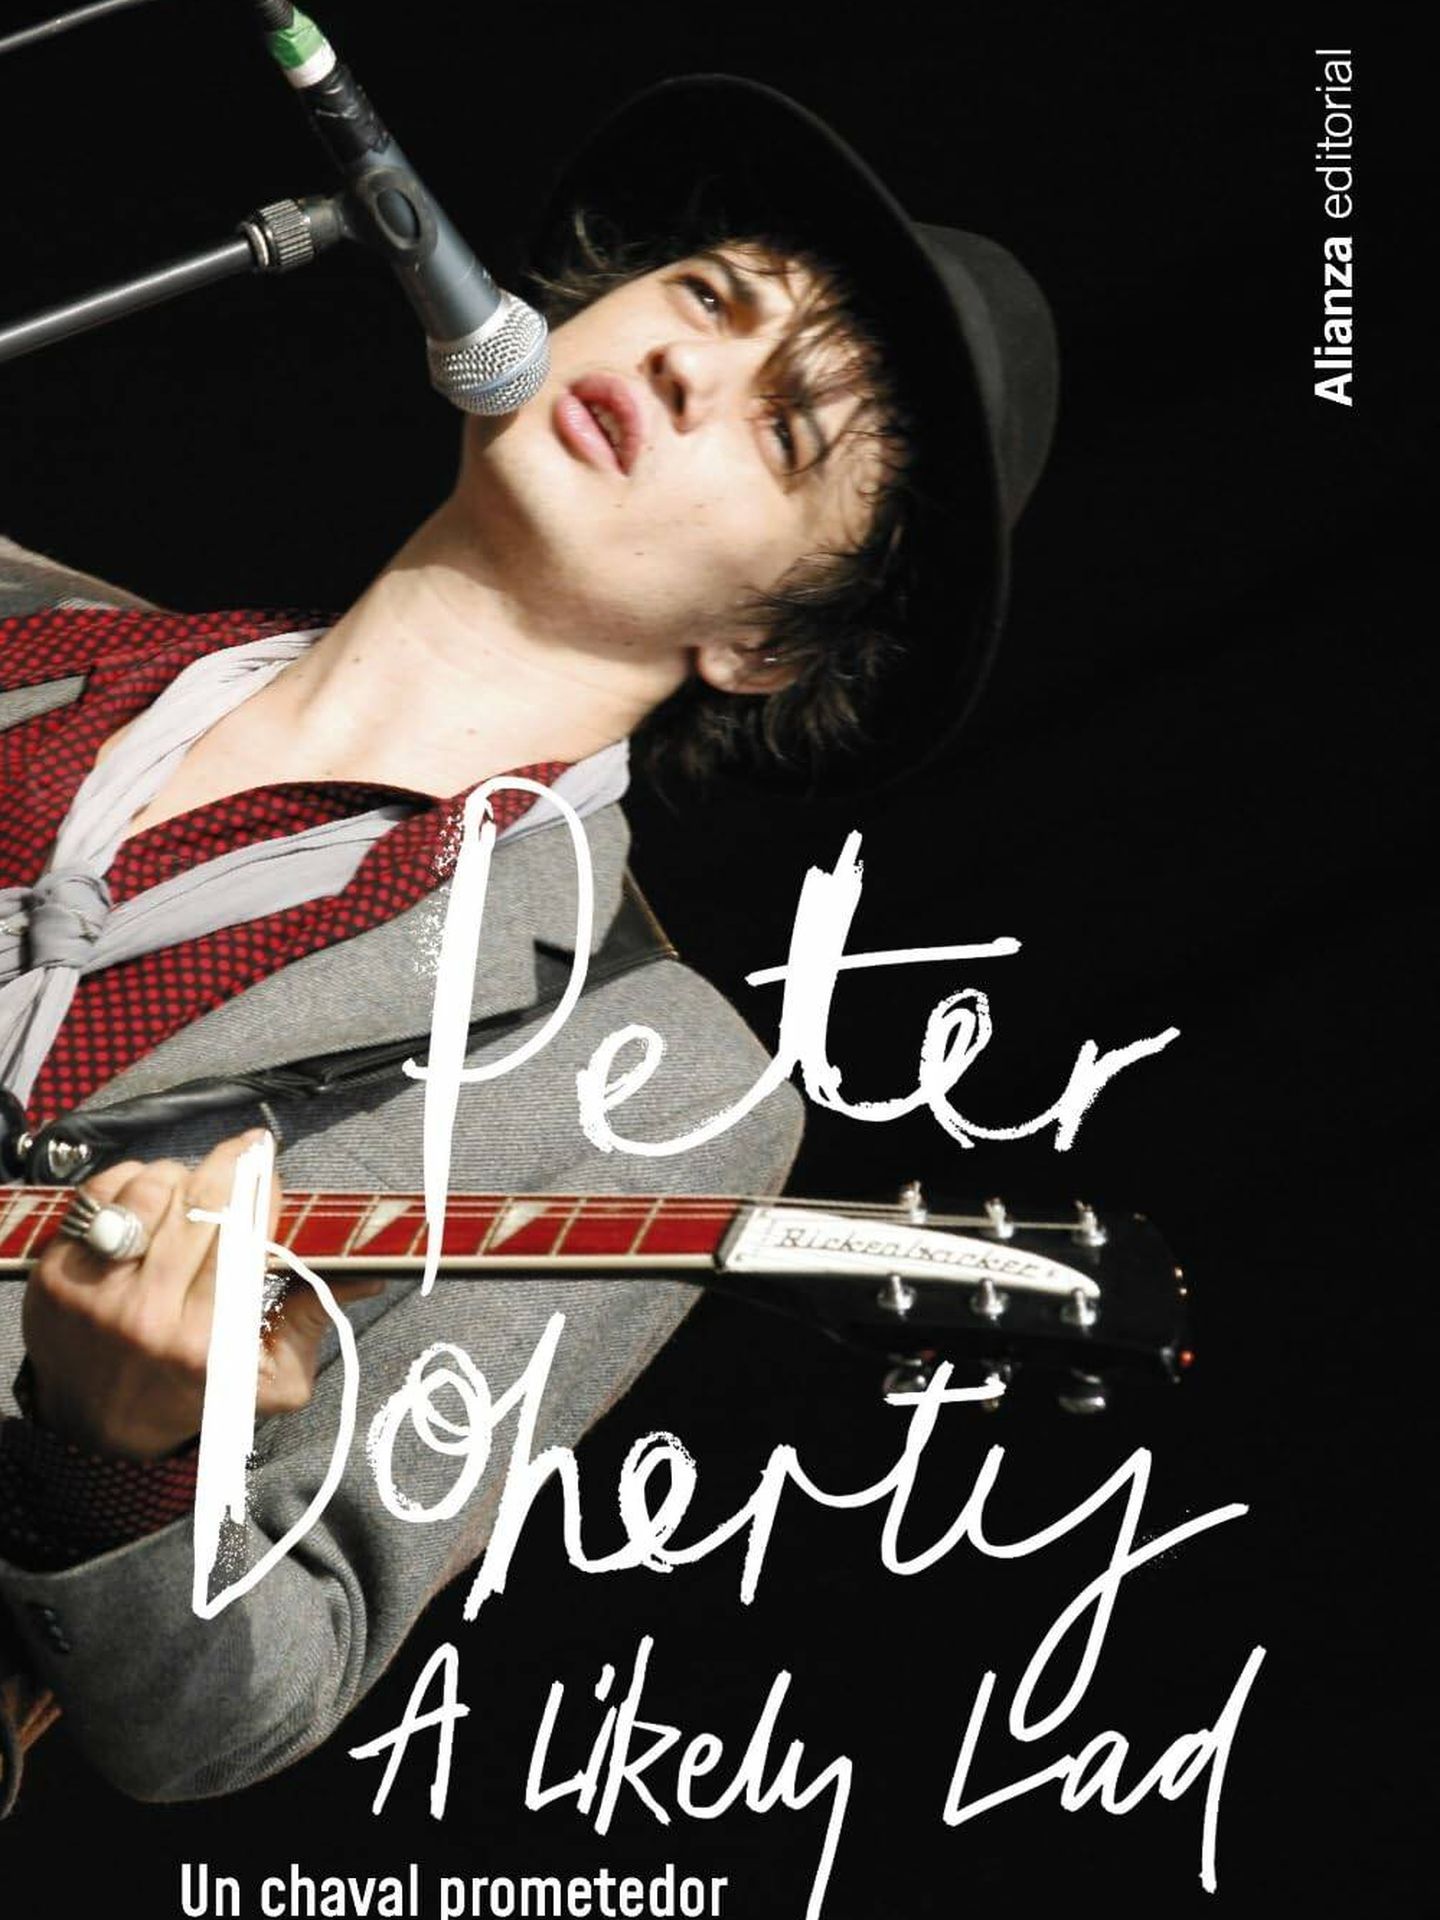 Las memorias de Pete Doherty, Un chaval prometedor (Alianza)